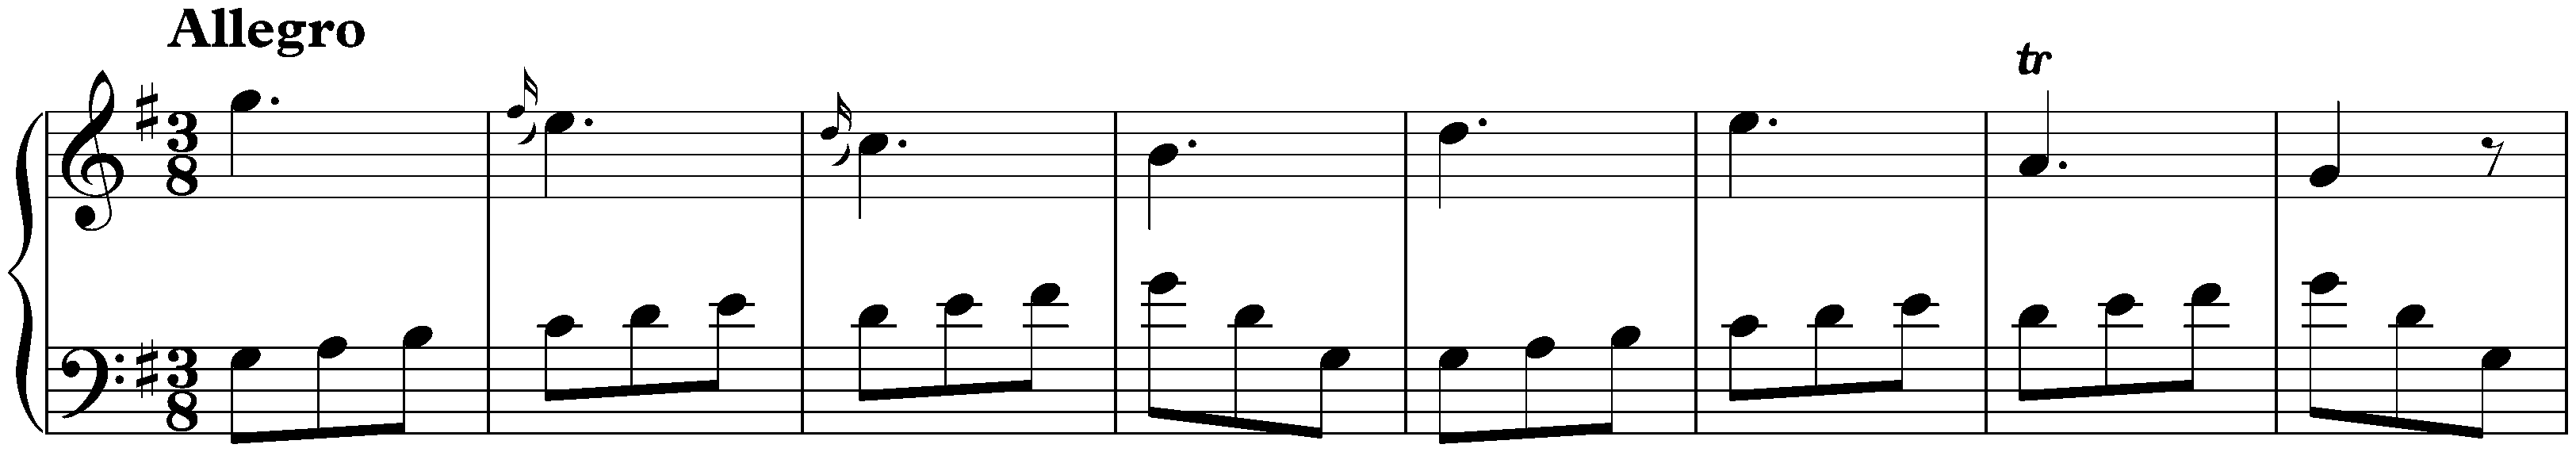 Sonata in G major, K. 235